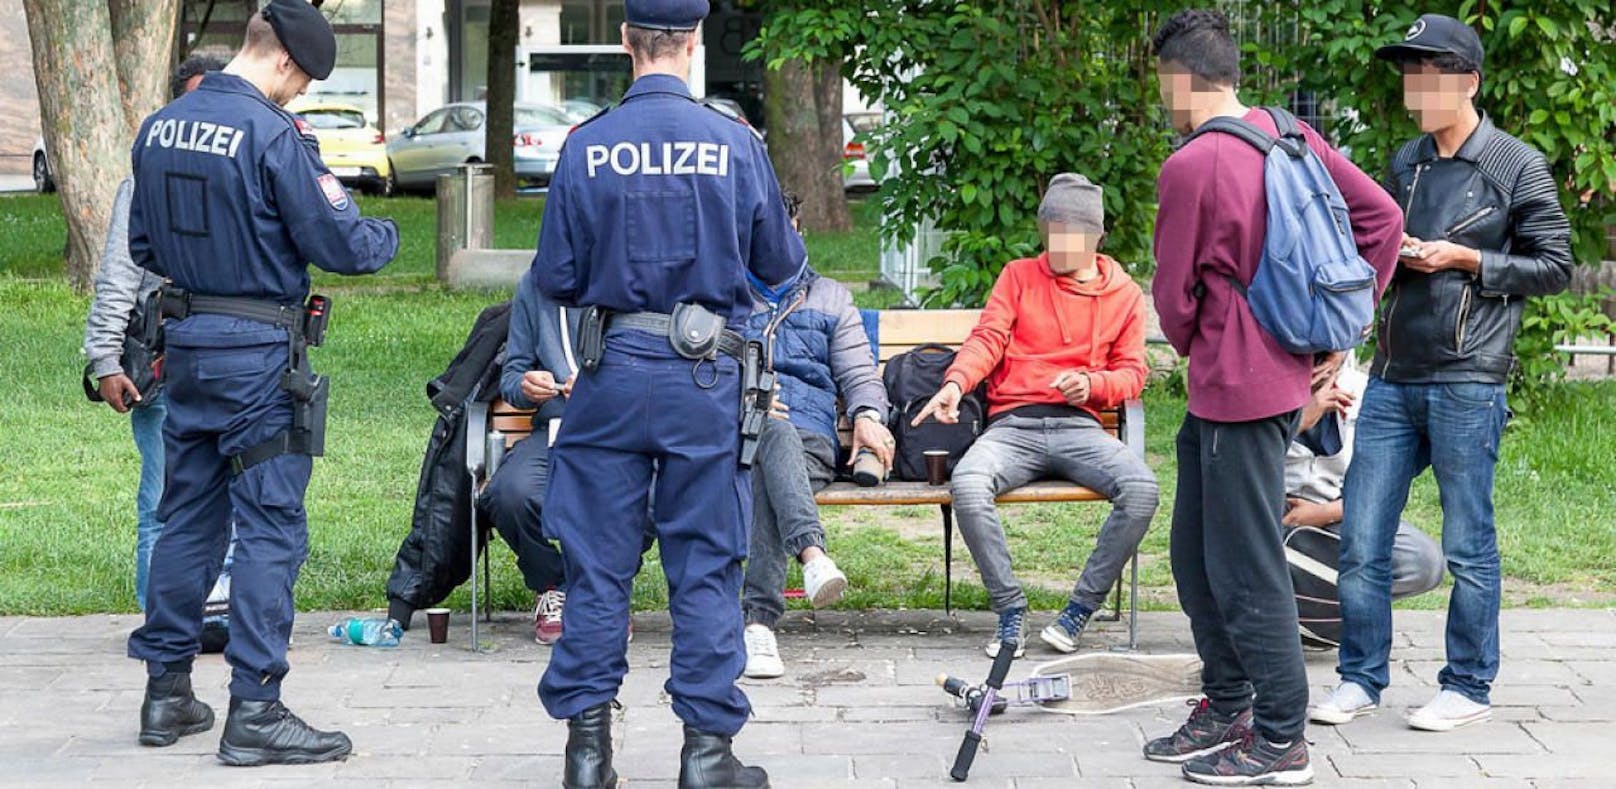 Polizeikontrollen sind im Hessenpark alltäglich. Trotzdem: Die Situation wird immer schlimmer.